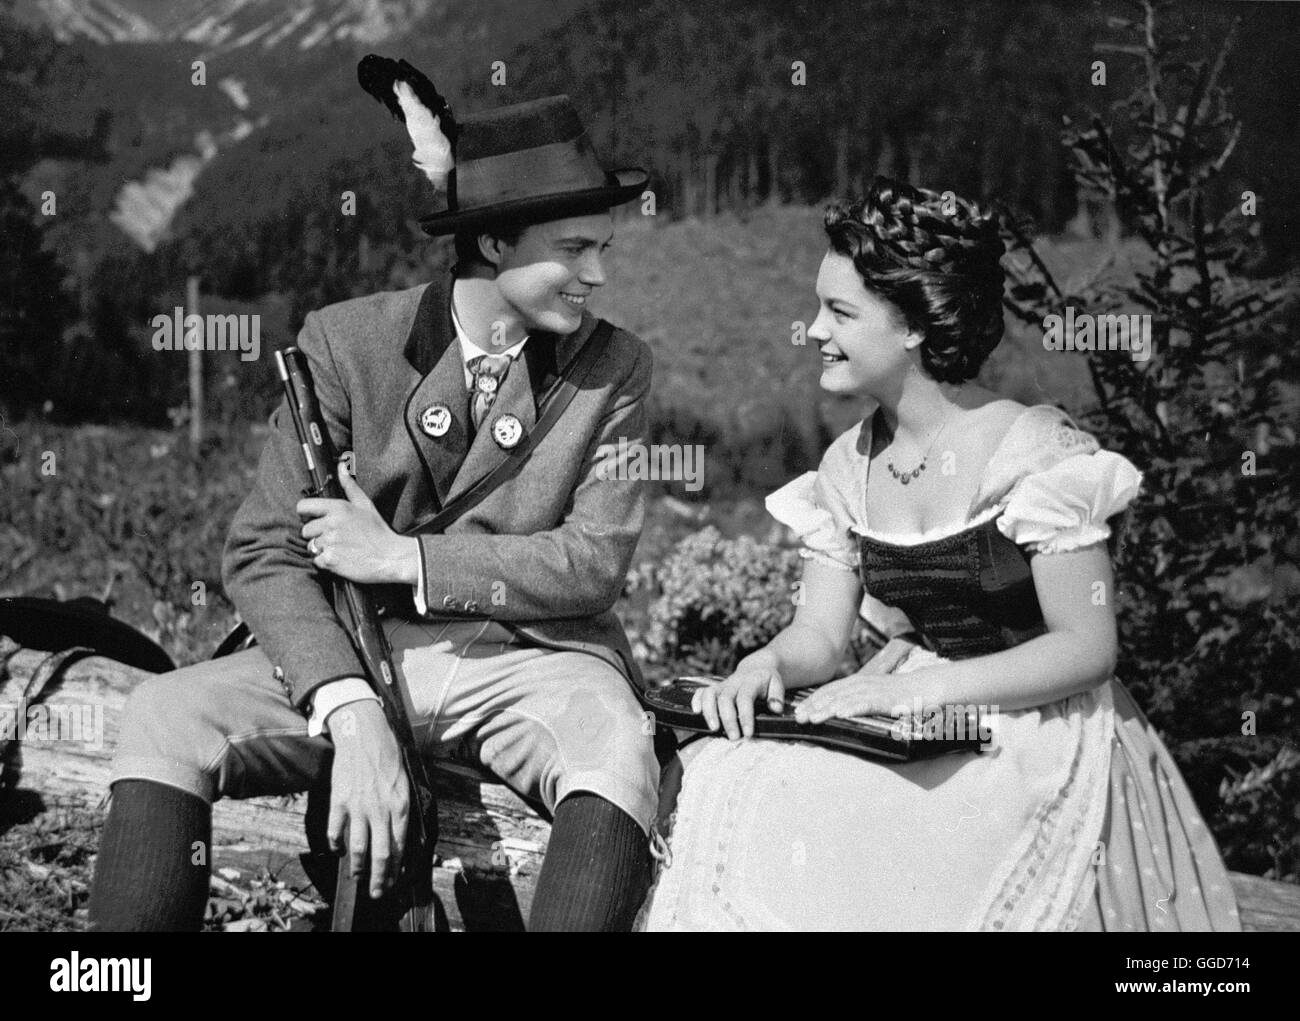 SISSI / Austria 1955 / Ernst Marischka Die junge Sissi (Romy Schneider) und Kaiser Franz Joseph (Karlheinz Böhm). Regie: Ernst Marischka Foto Stock